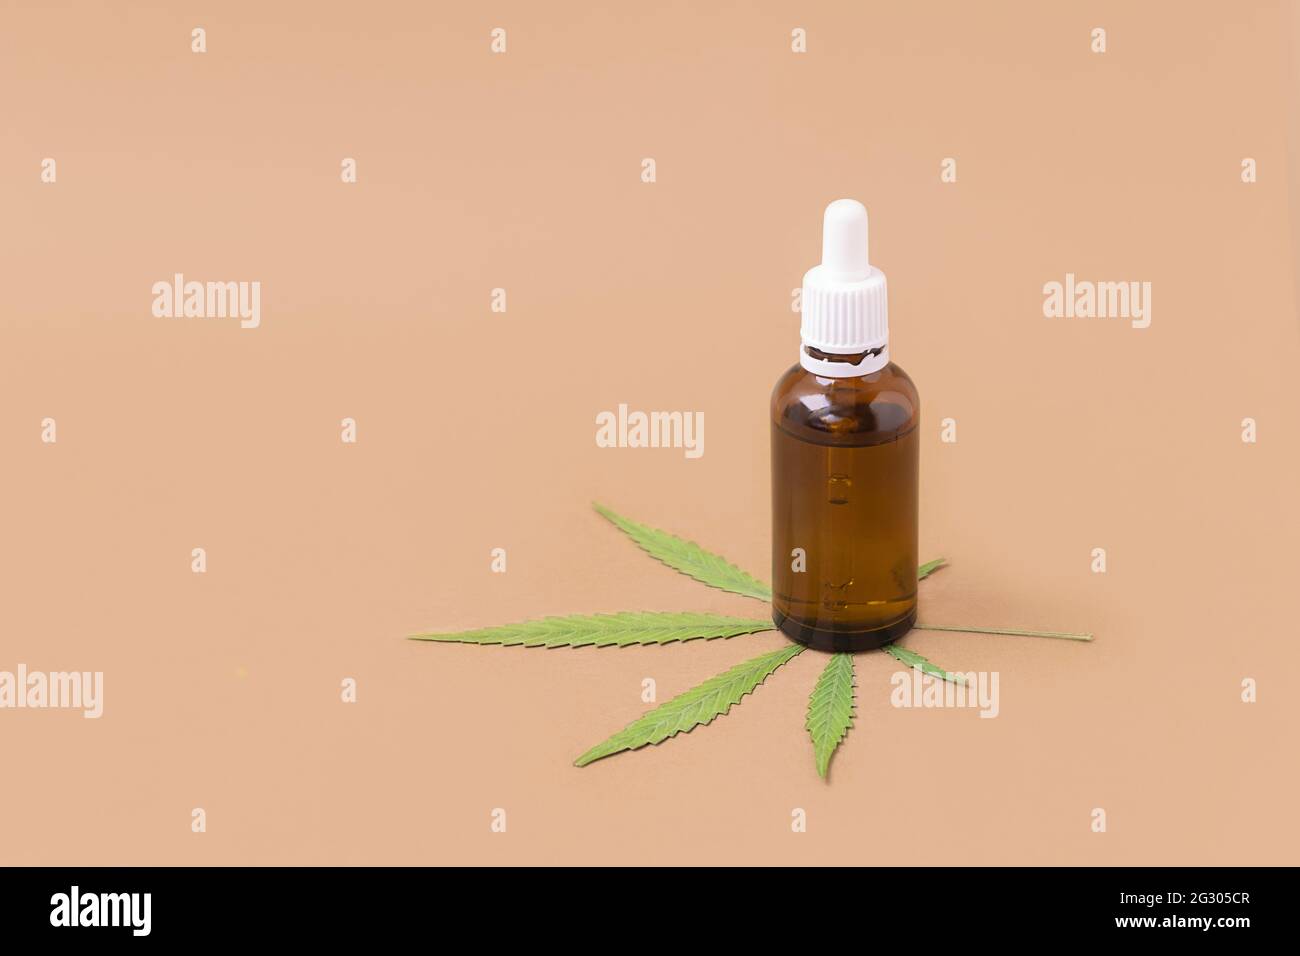 Bottiglia di olio di cannabis con foglia verde su sfondo beige con spazio per il testo. Concetto di cannabis medica Foto Stock